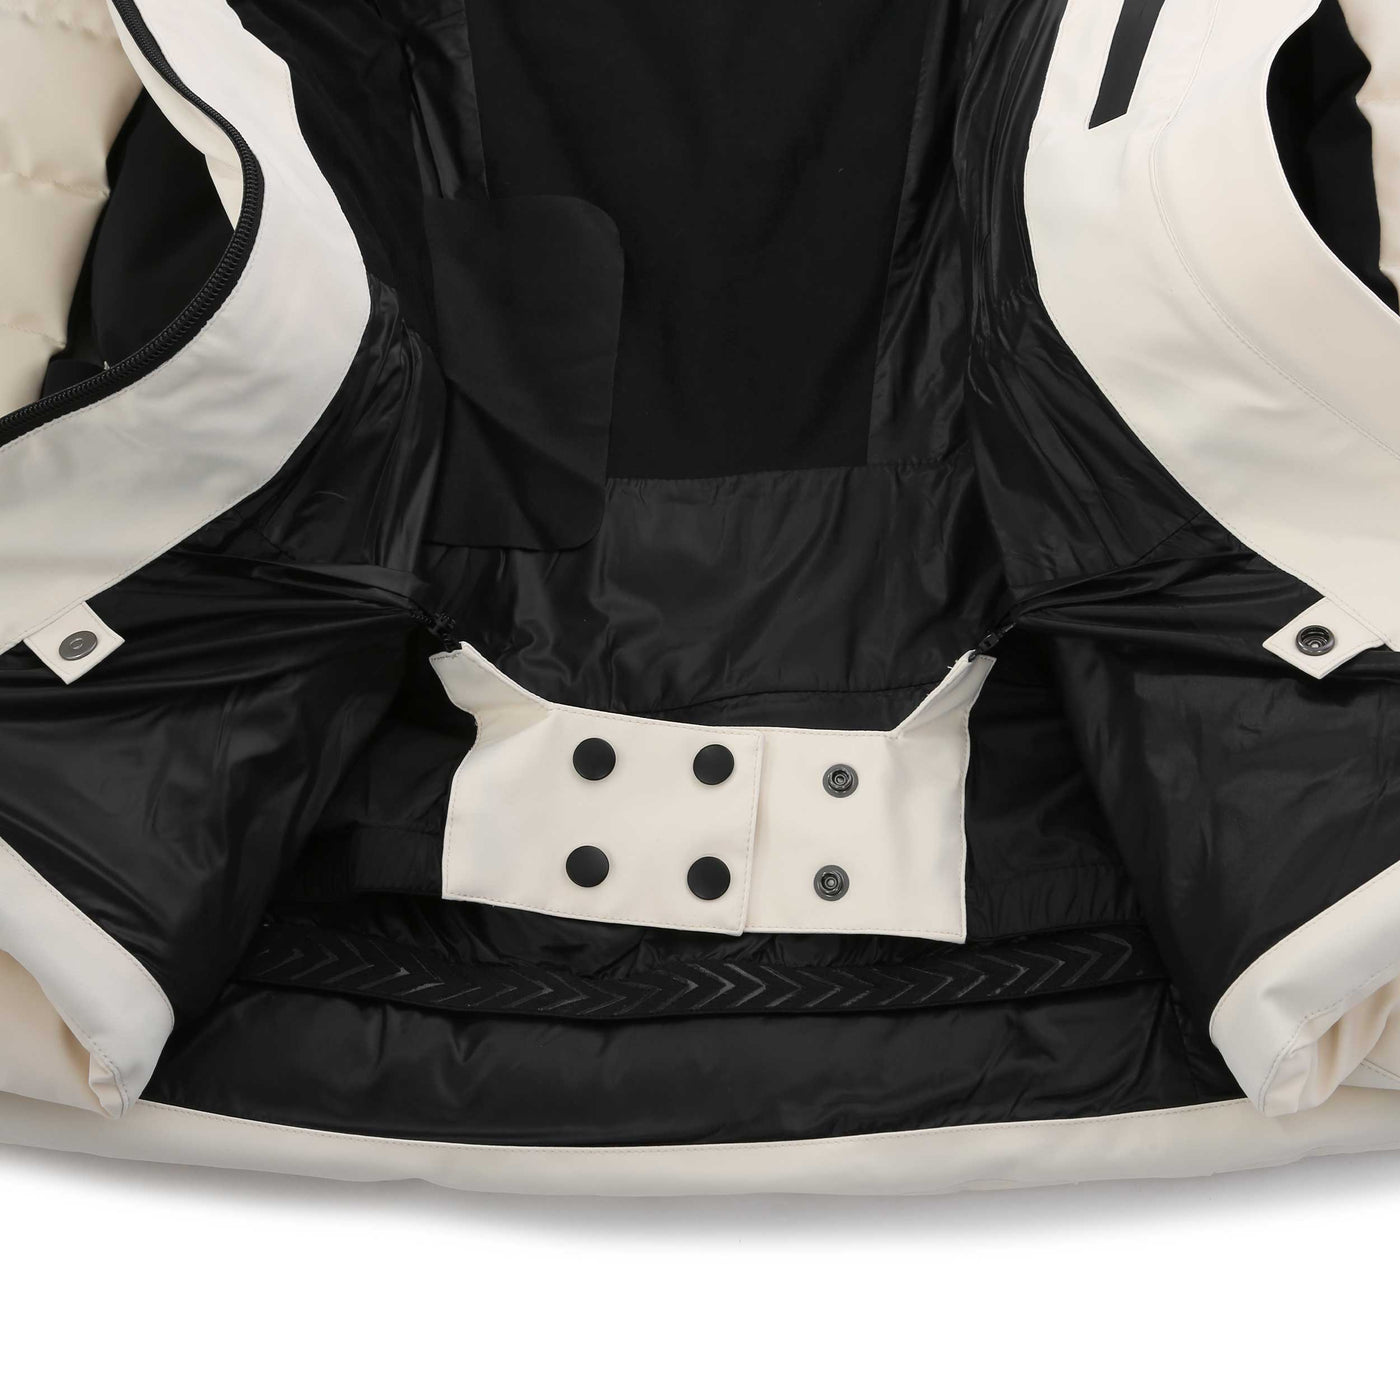 Mackage Elita Ladies Jacket in Ceramic White Powder Skirt